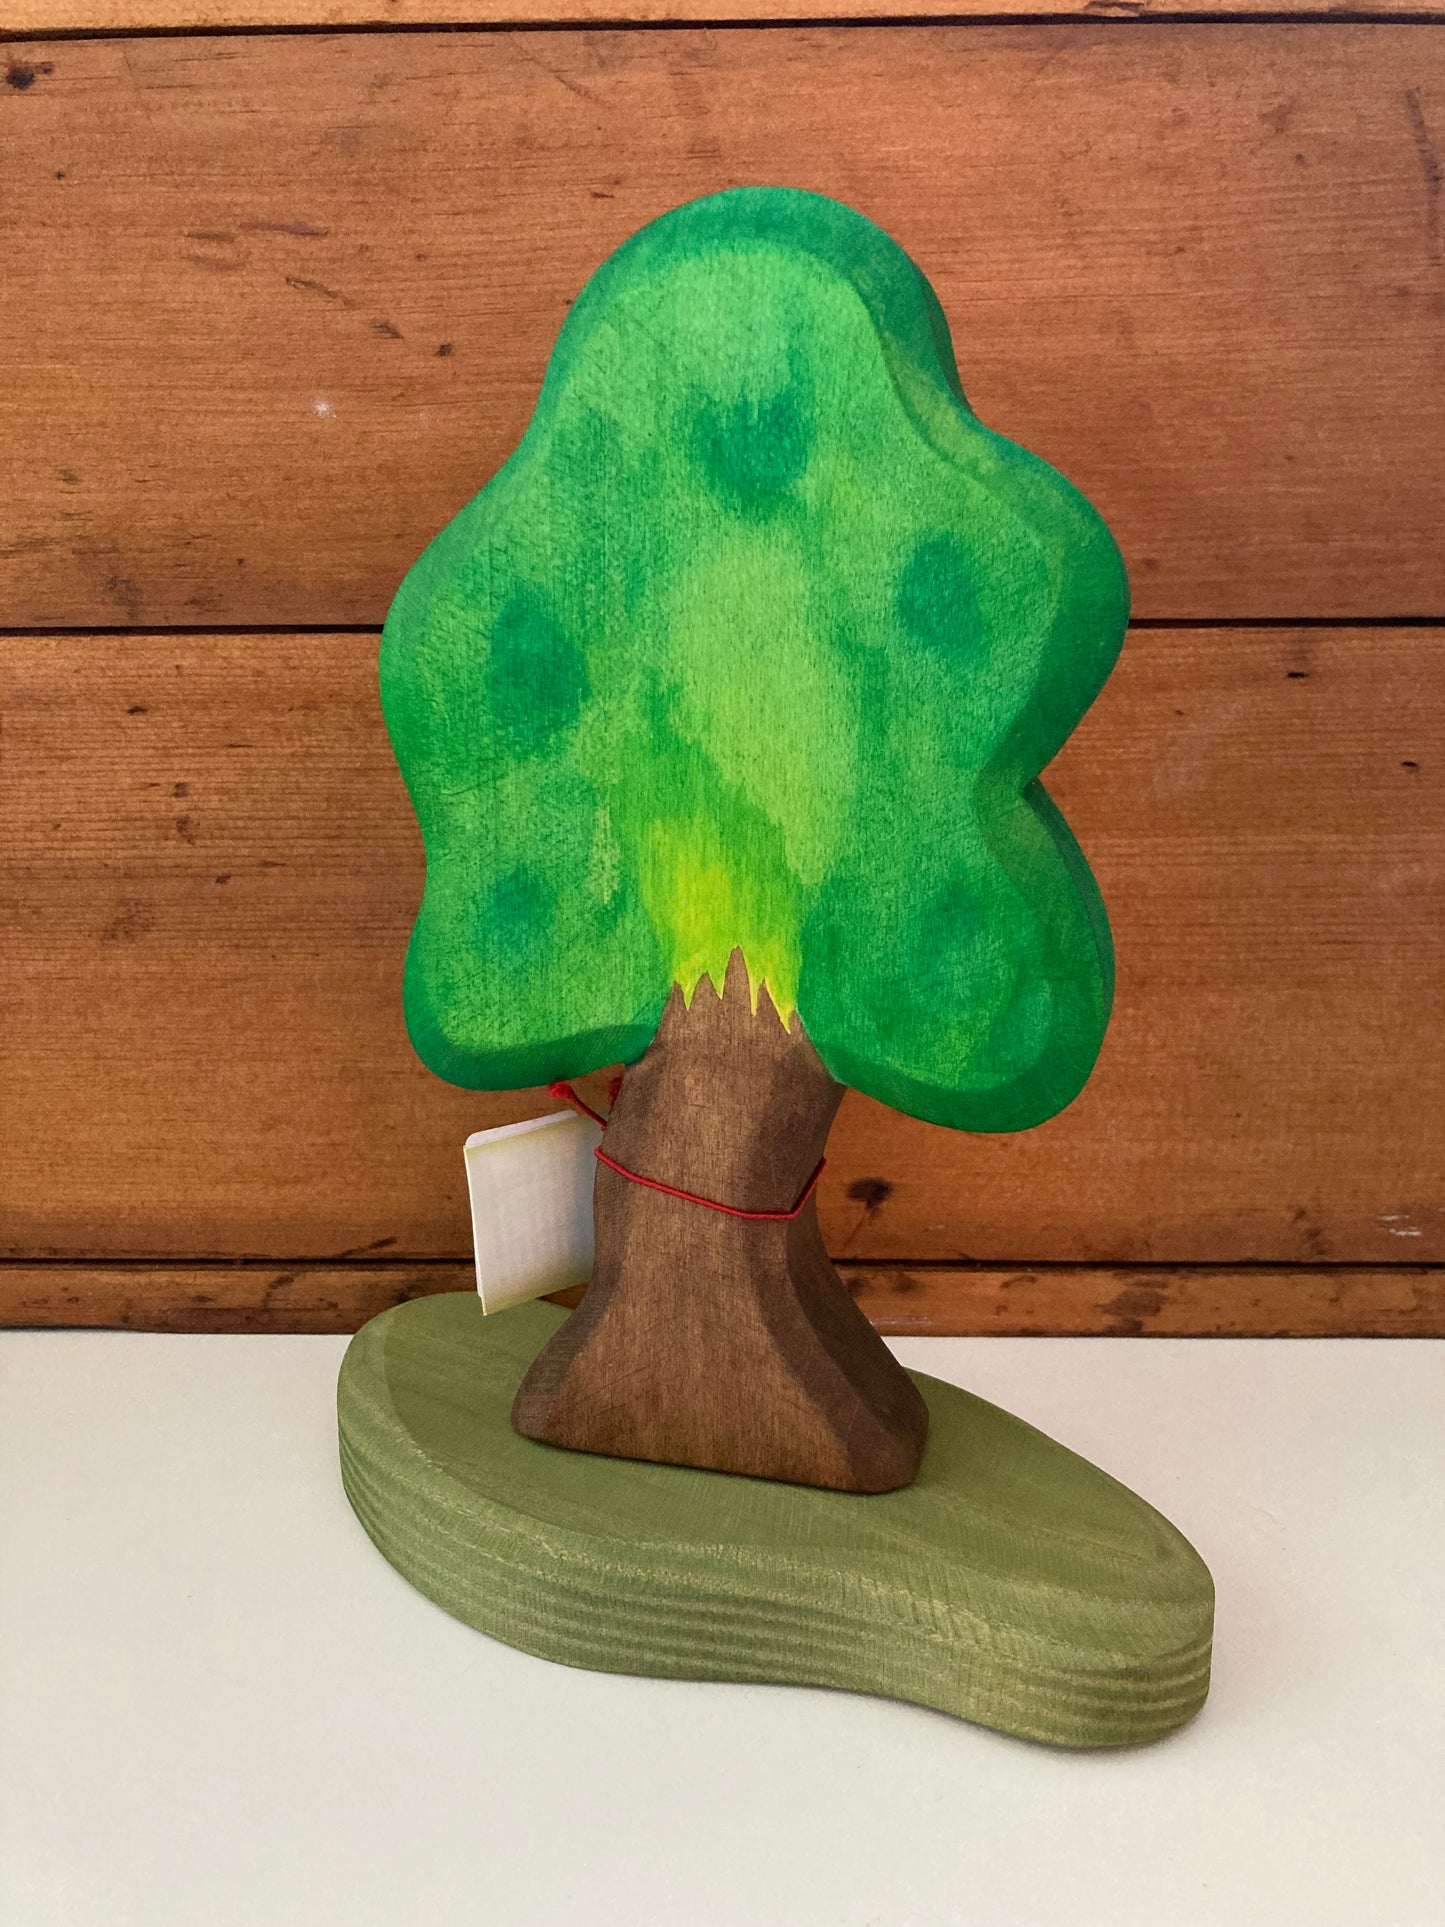 Wooden Dollhouse Play - OAK TREE